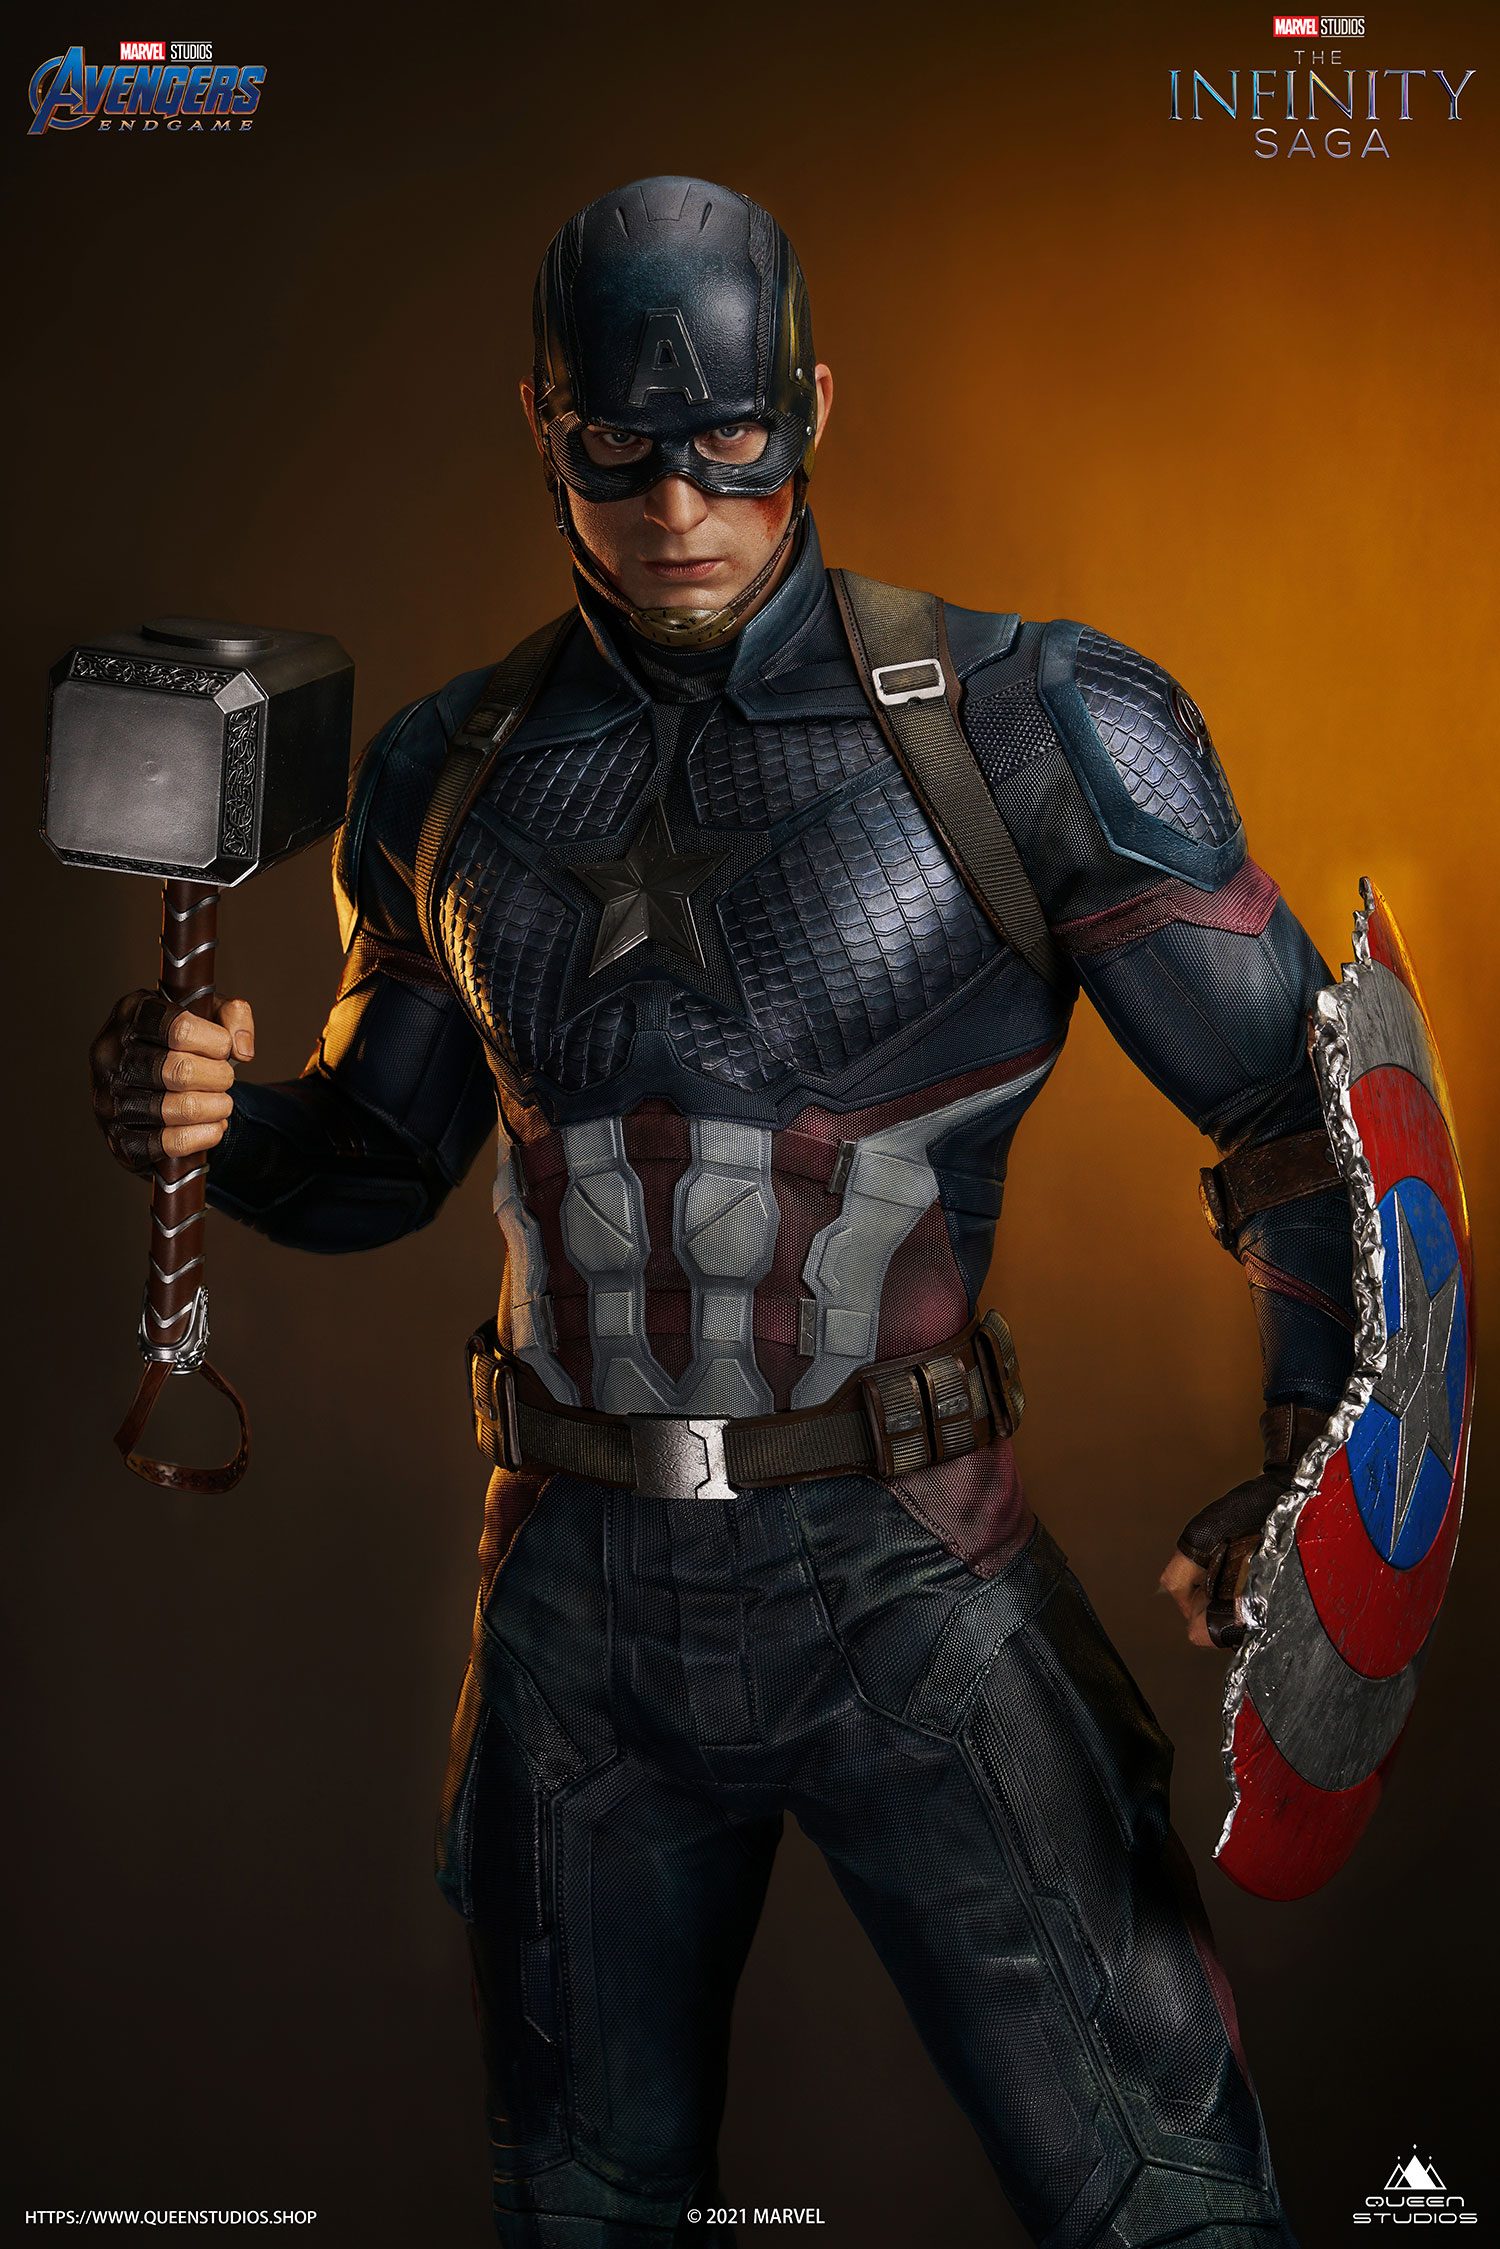 Cinéma - Statue de Captain America - Soldat Super héros tenant son